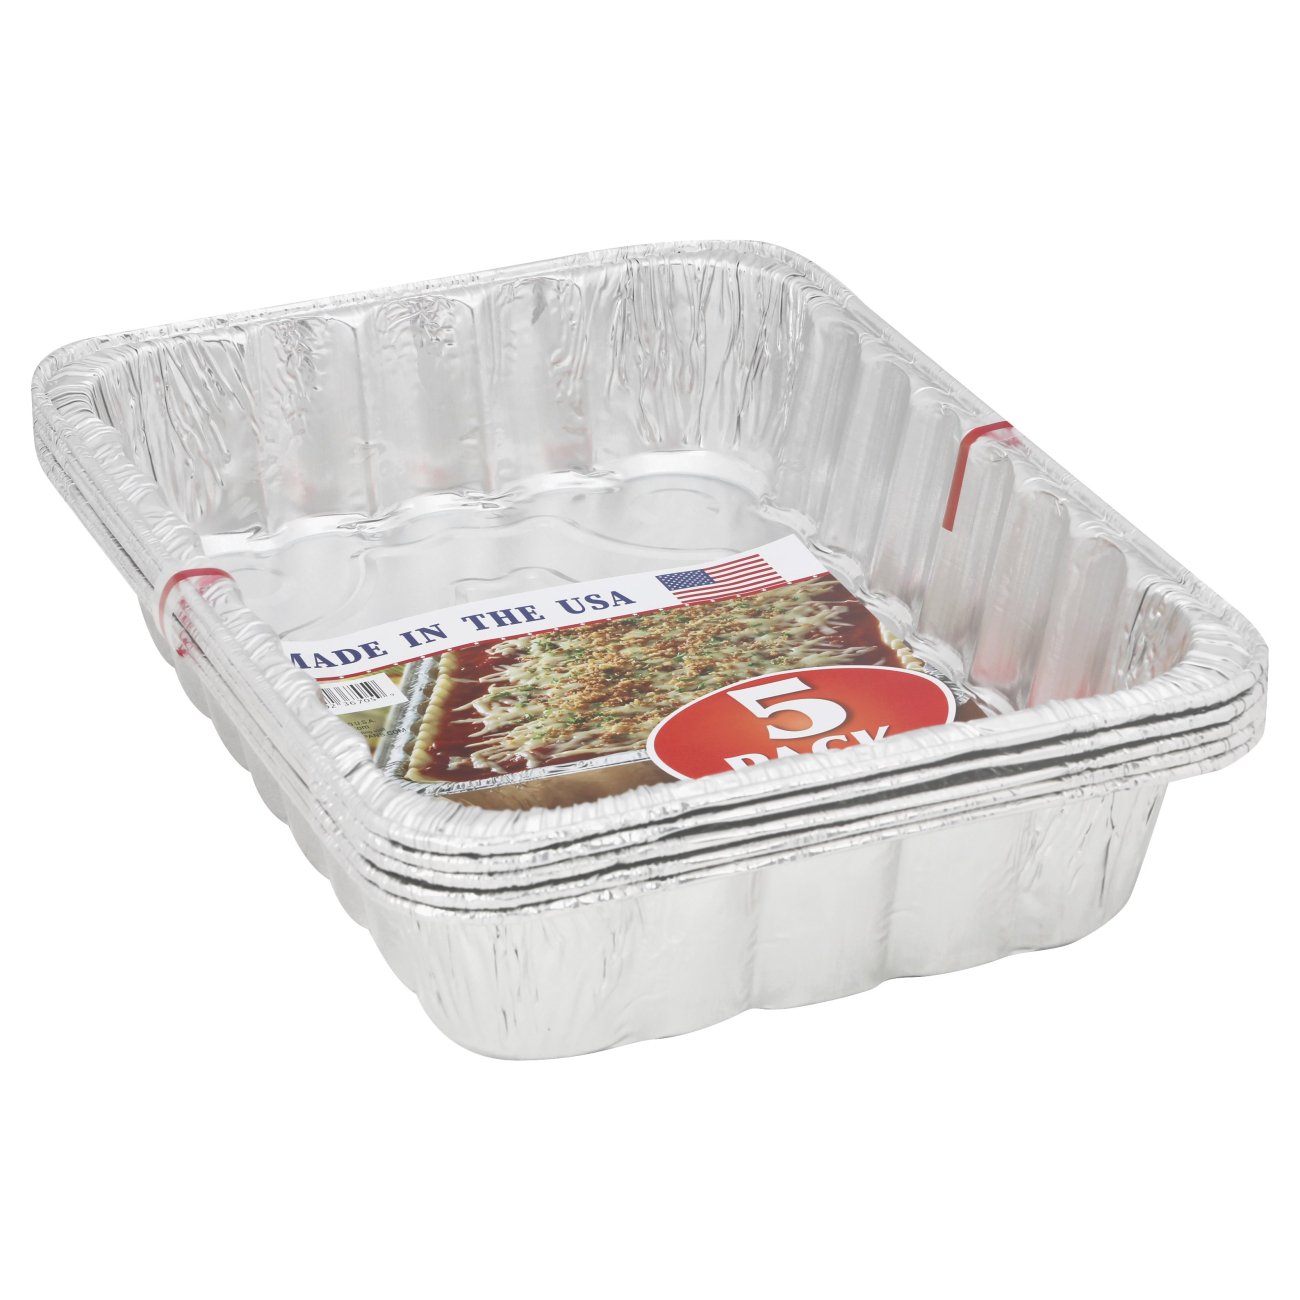 Handi-foil® Eco-Foil Giant Lasagna Pans, 5 pk / 13.5 x 9.6 in - Foods Co.